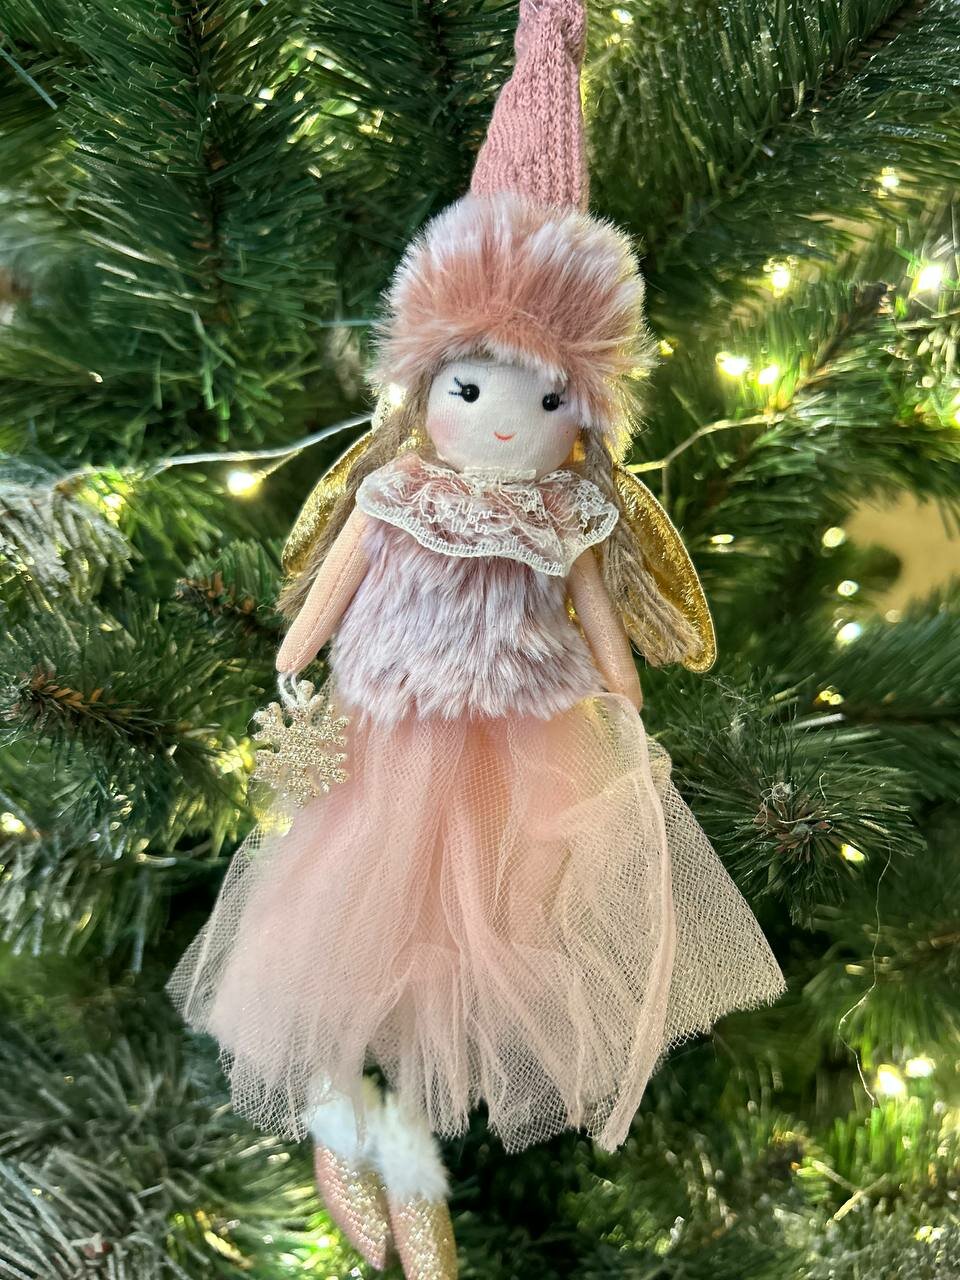 Рождественский ангел, Розовая плюшевая кукла-ангел, Подарок на Новый Год украшение на елку, кулон, новогодние украшения, Елочная игрушка